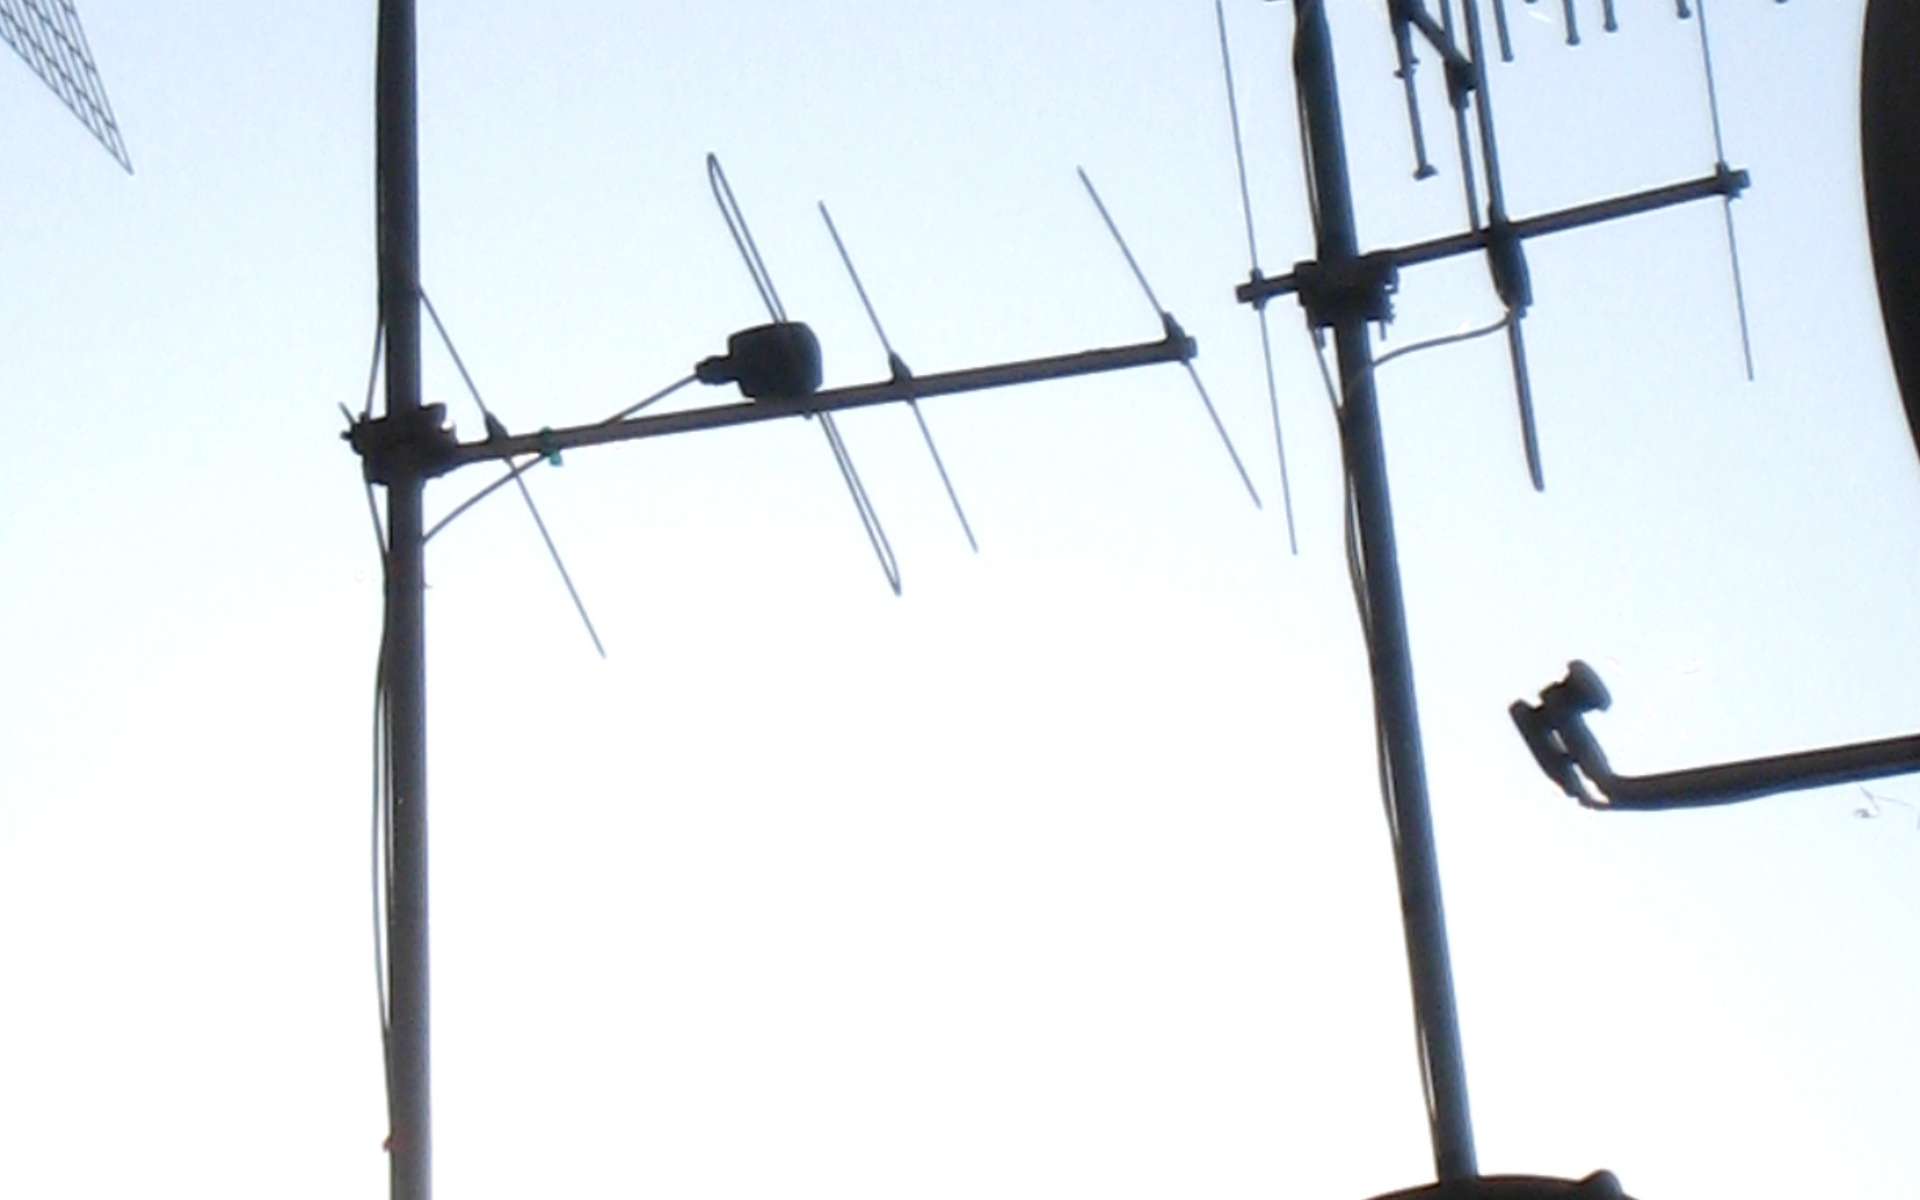 Une antenne de télévision doit être placée en hauteur pour un meilleur signal. © Groume, Flickr, CC BY-SA 2.0